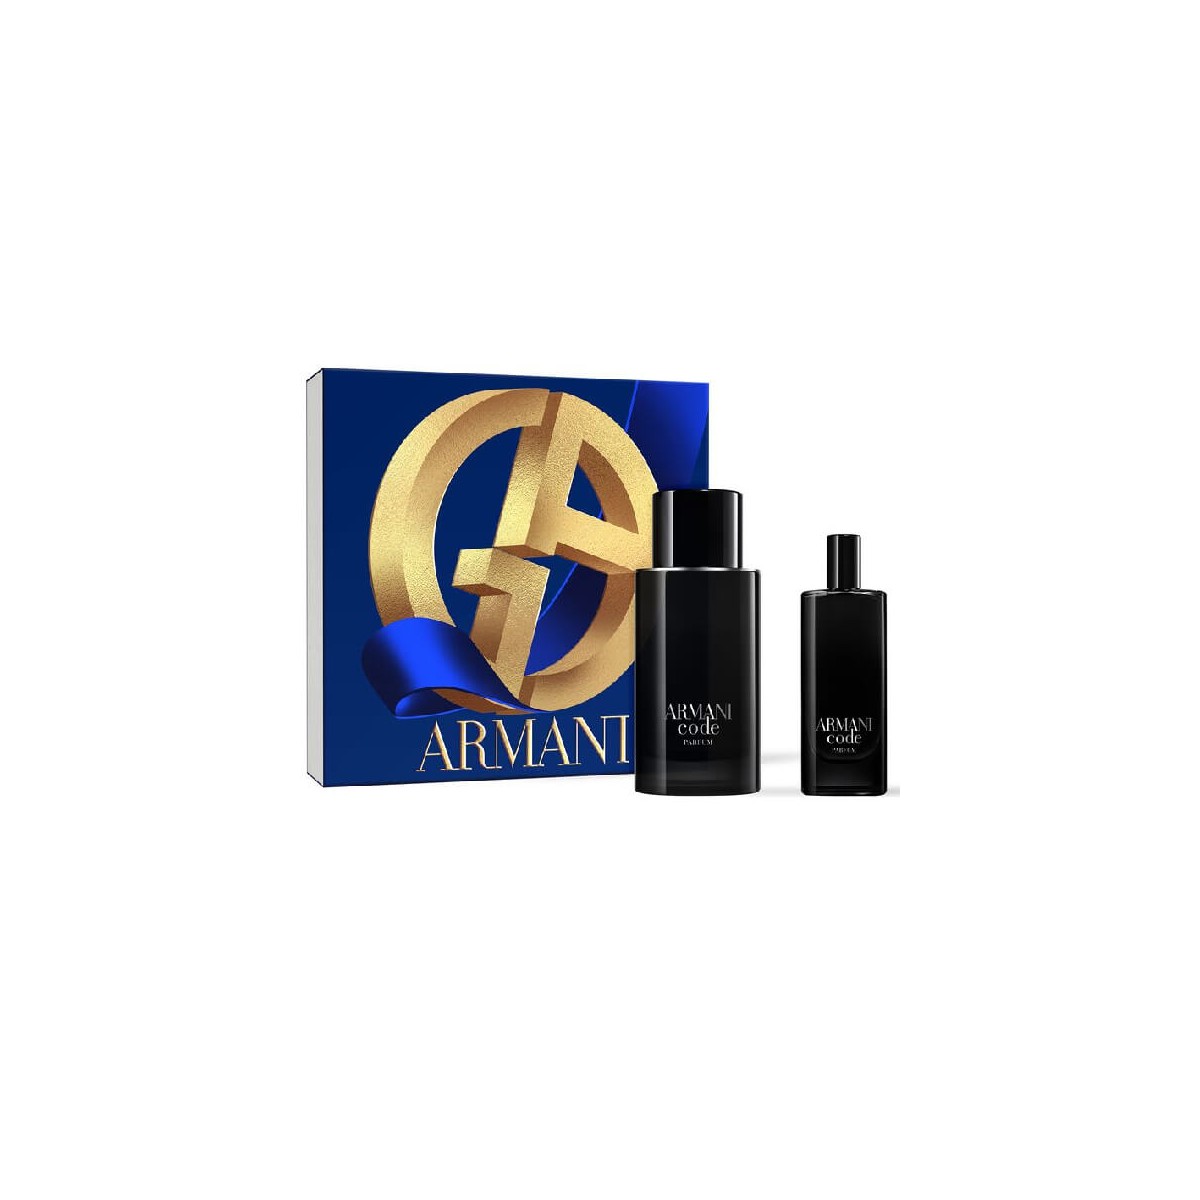 contiene: Armani Code Parfum spray da 75ml e la travel size eau de toilette spray da 15ml.